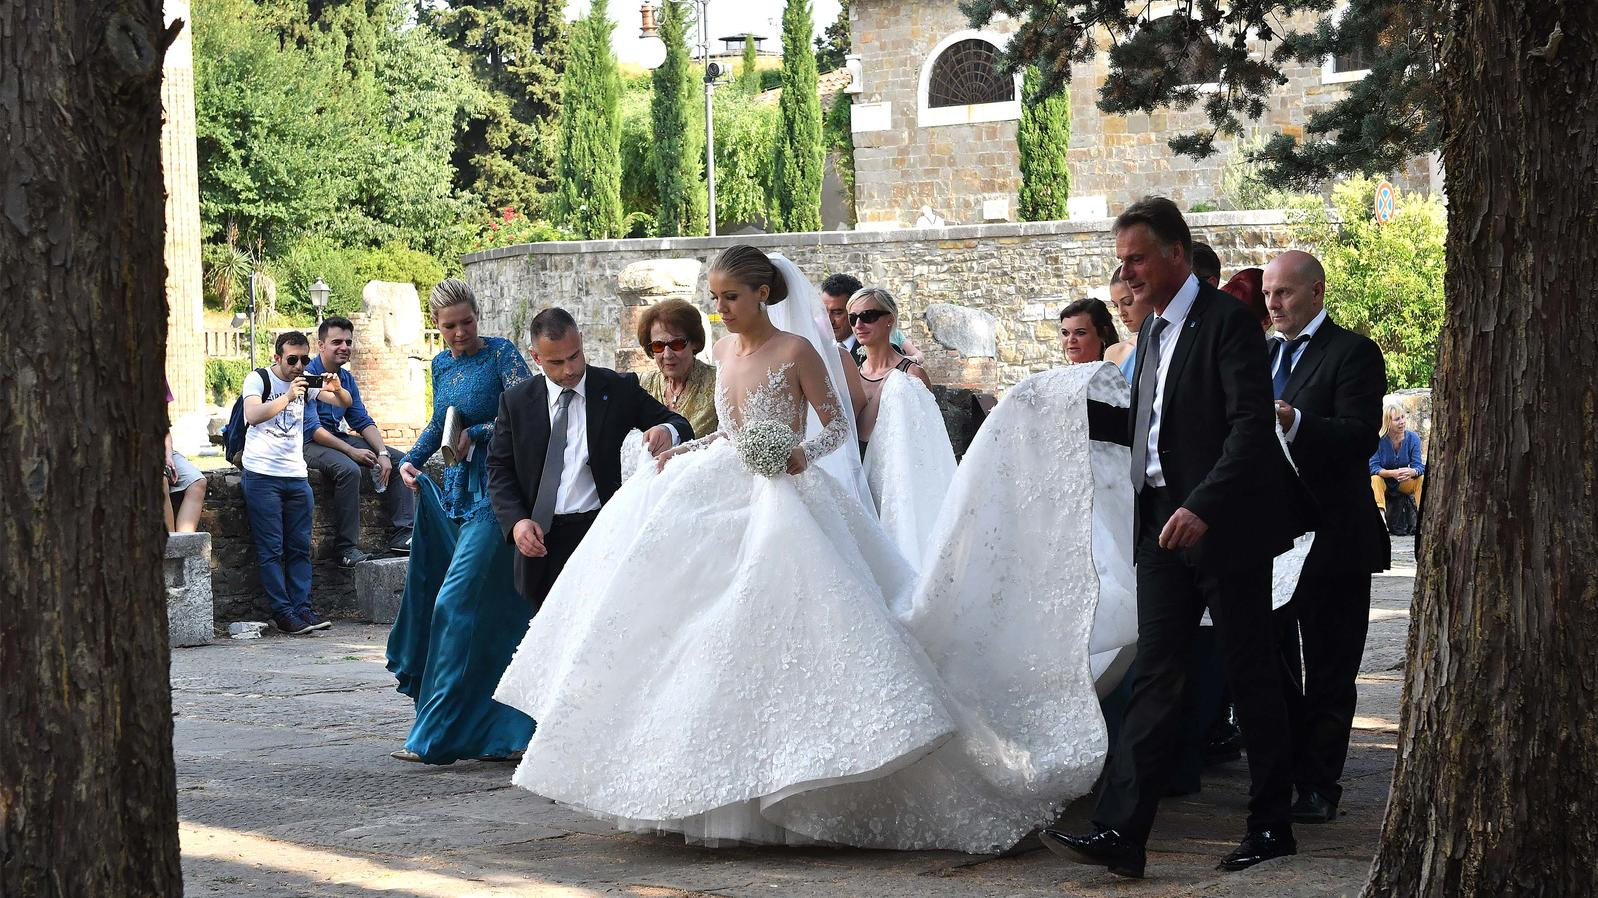 Victoria Swarovski Hochzeitskleid
 Victoria Swarovski Shitstorm für 800 000 Euro teures